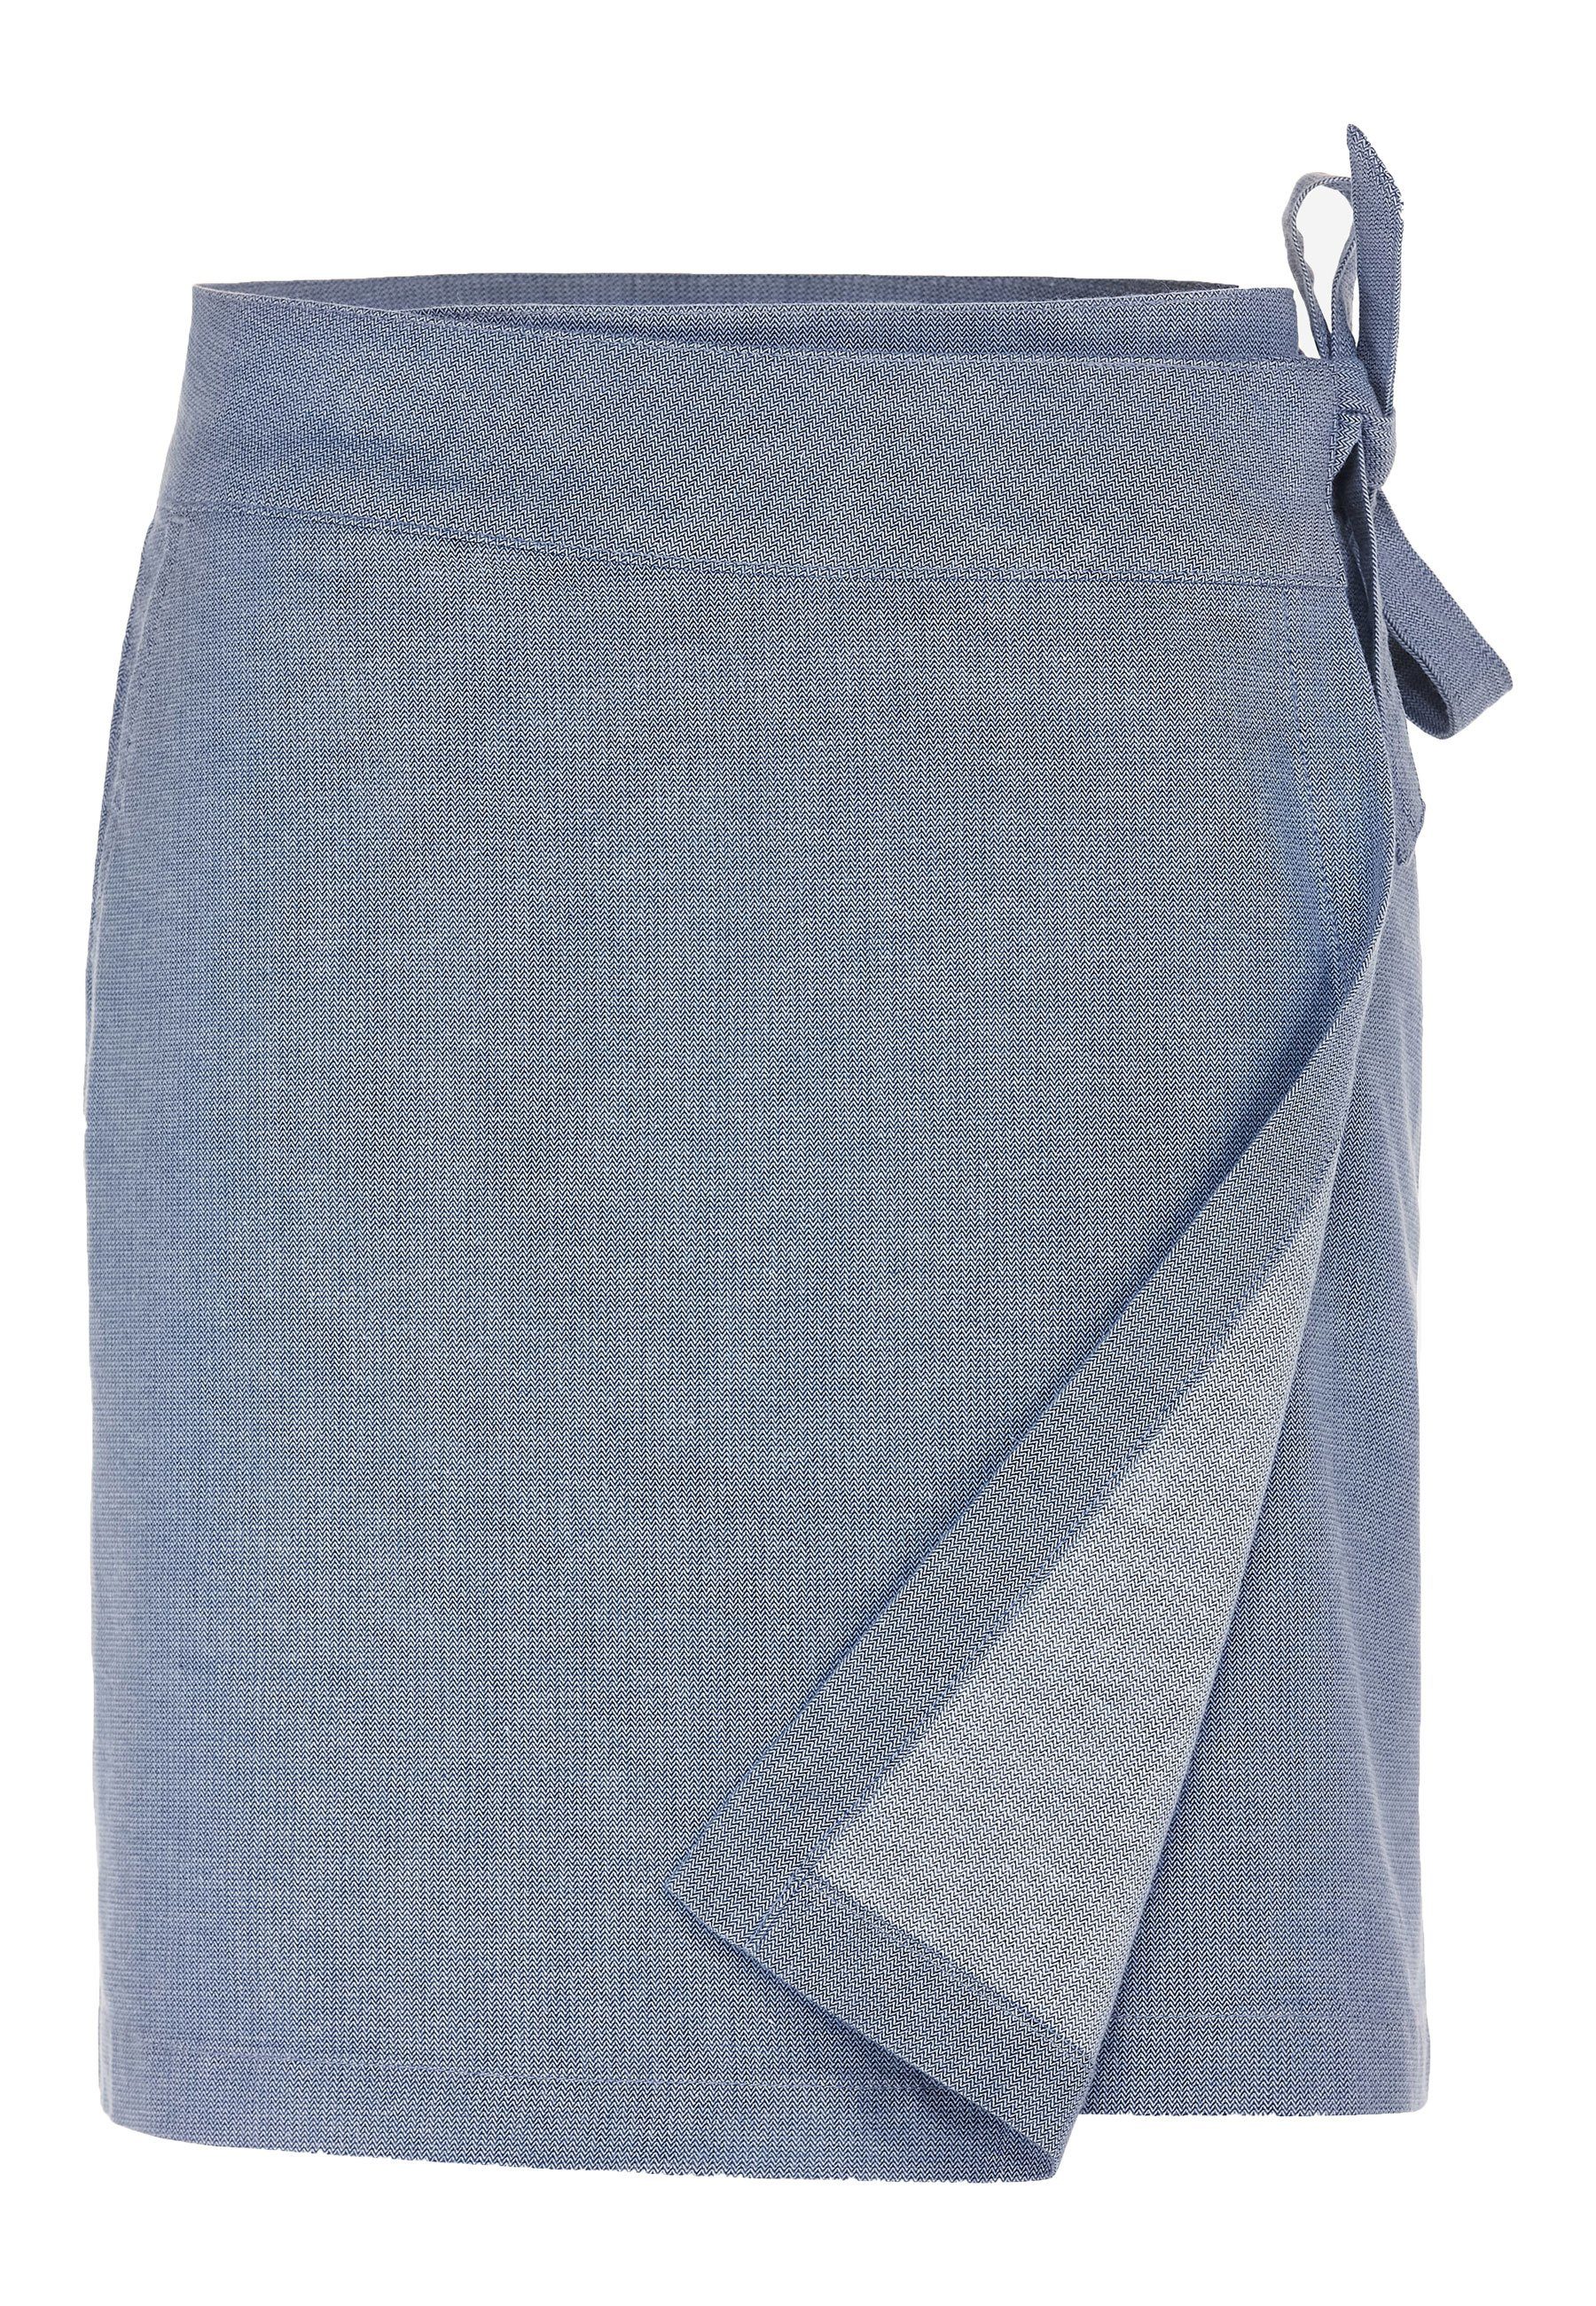 Dauerschleife Taschen Rock mit bluefog - kurzer white Elkline Sommerrock